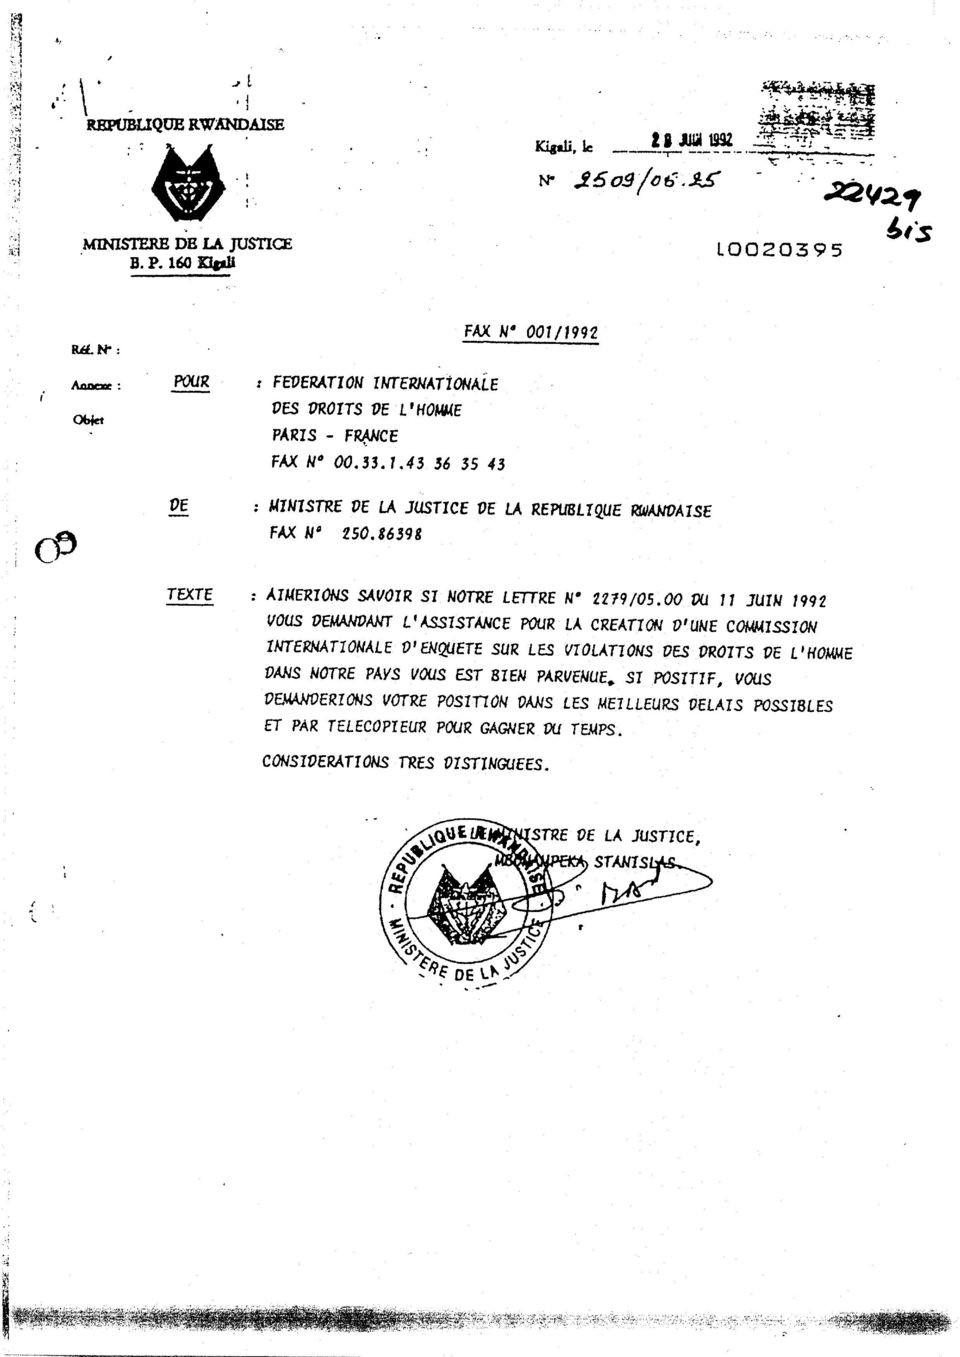 TUIN 1992 VOUS OEMAJVOANT LIASSISTANCE POUR LA C EATION OtUNE COMMISSION INTERNATIONALE D EN~AJETE SUR LES VIOLATIOI~S DES